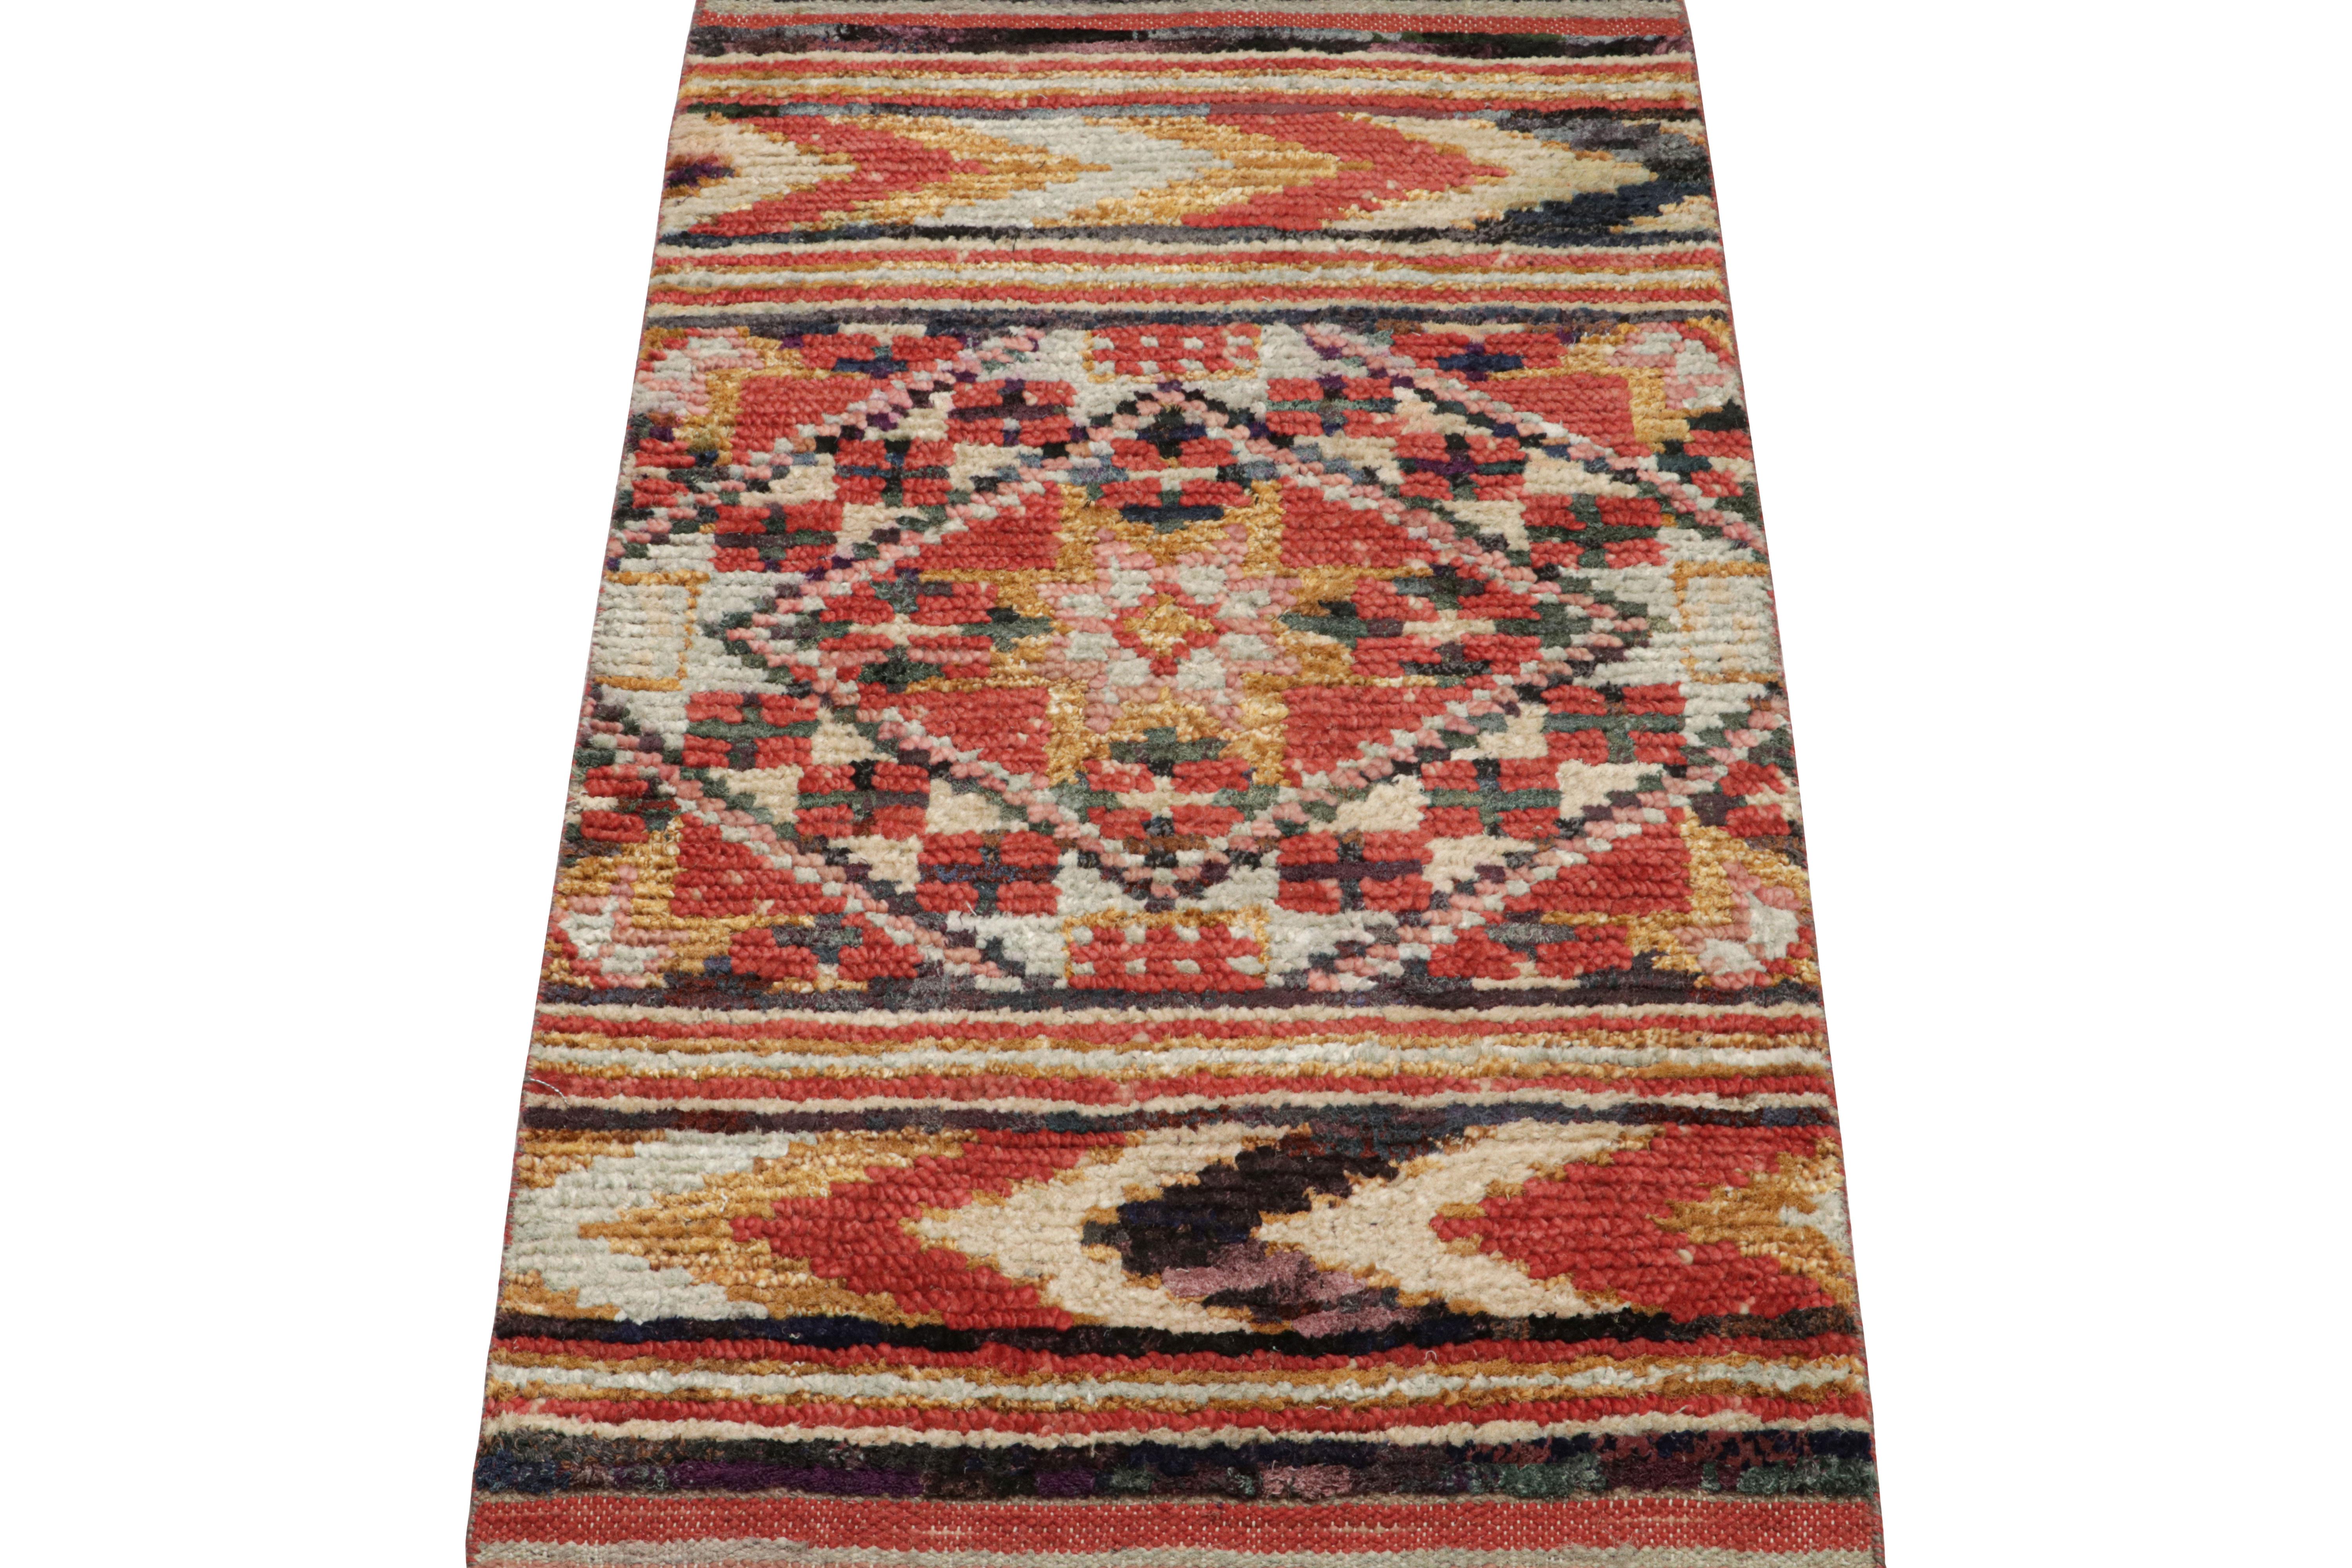 Dieser aus Wolle und Seide handgeknüpfte marokkanische 2x4-Teppich weist geometrische Muster auf, die von den primitiven Webtraditionen der Berber inspiriert sind, sowie eine gerippte Textur, die an die Boucherouit-Sensibilität erinnert. 

Über das